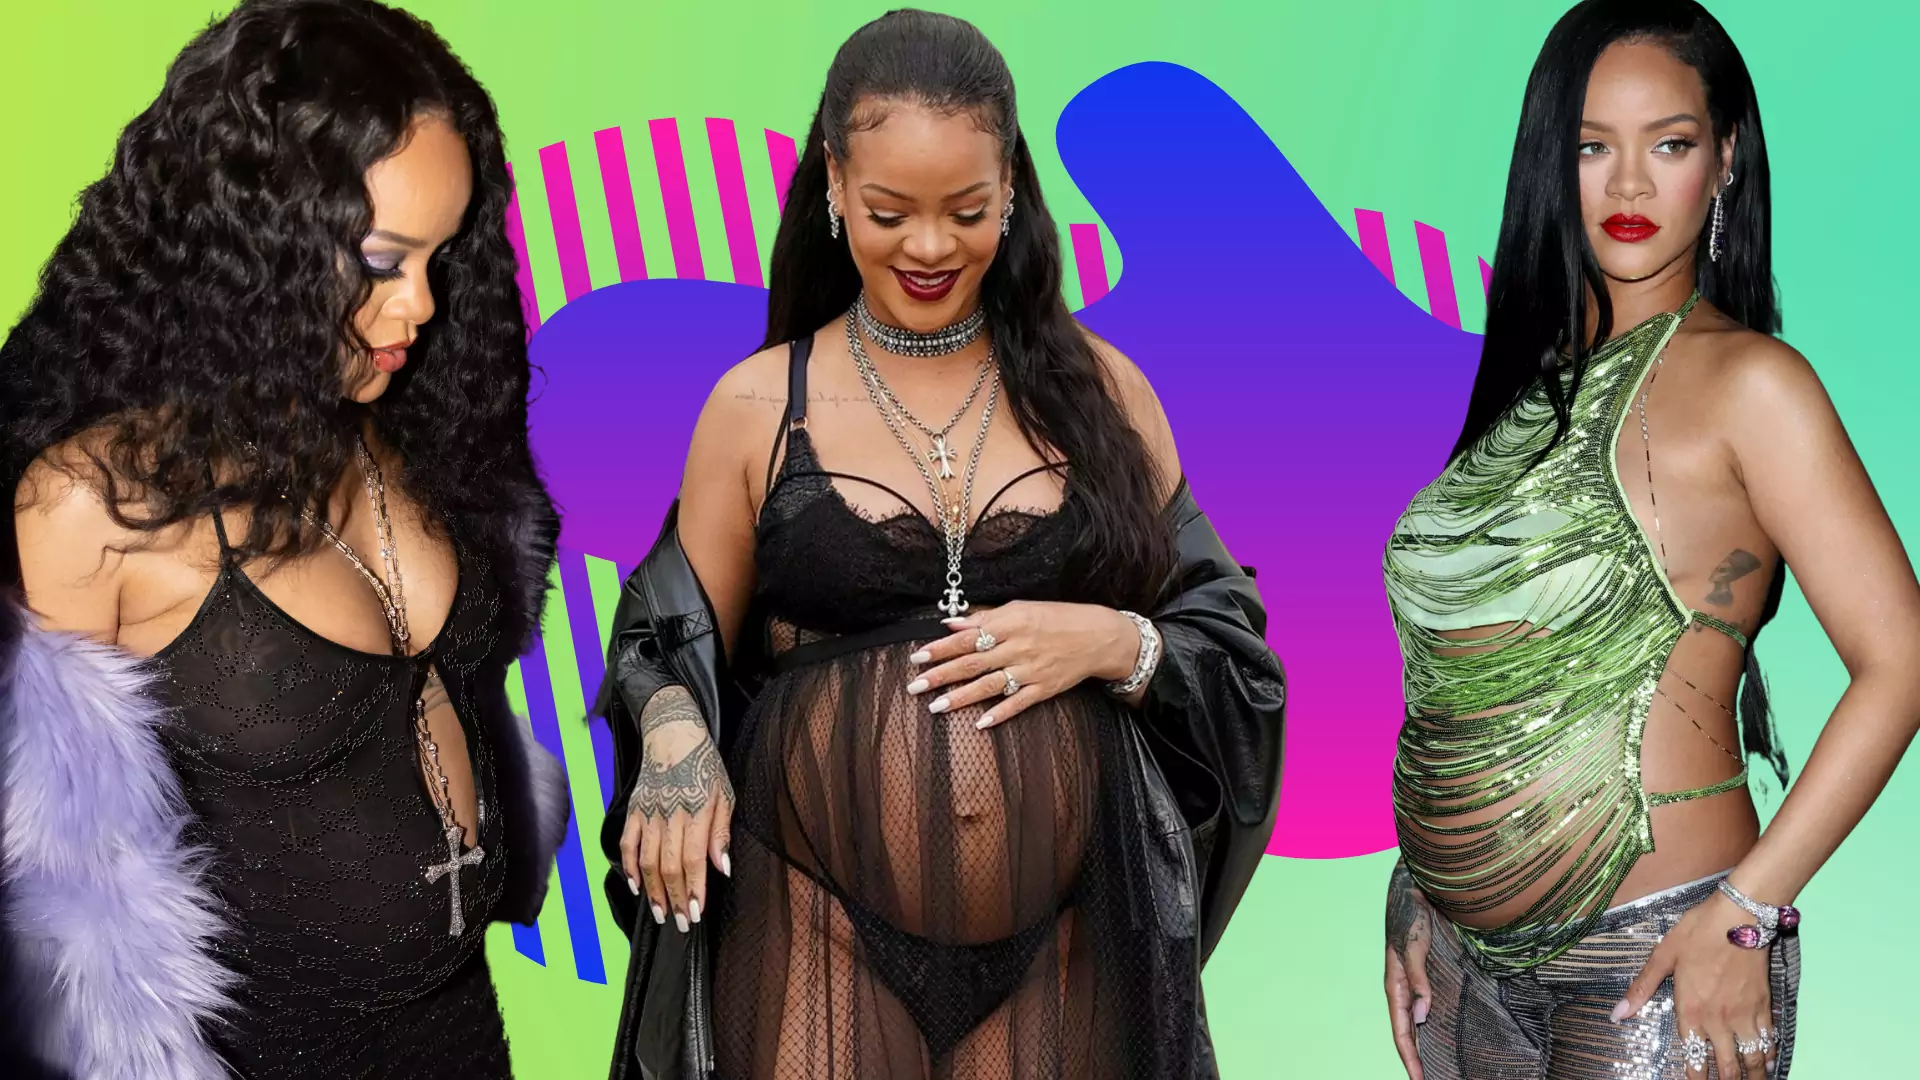 Kobiety w ciąży powinny ukrywać swoje ciało? Rihanna jest innego zdania i pokazuje, że to dobry czas na bycie seksowną